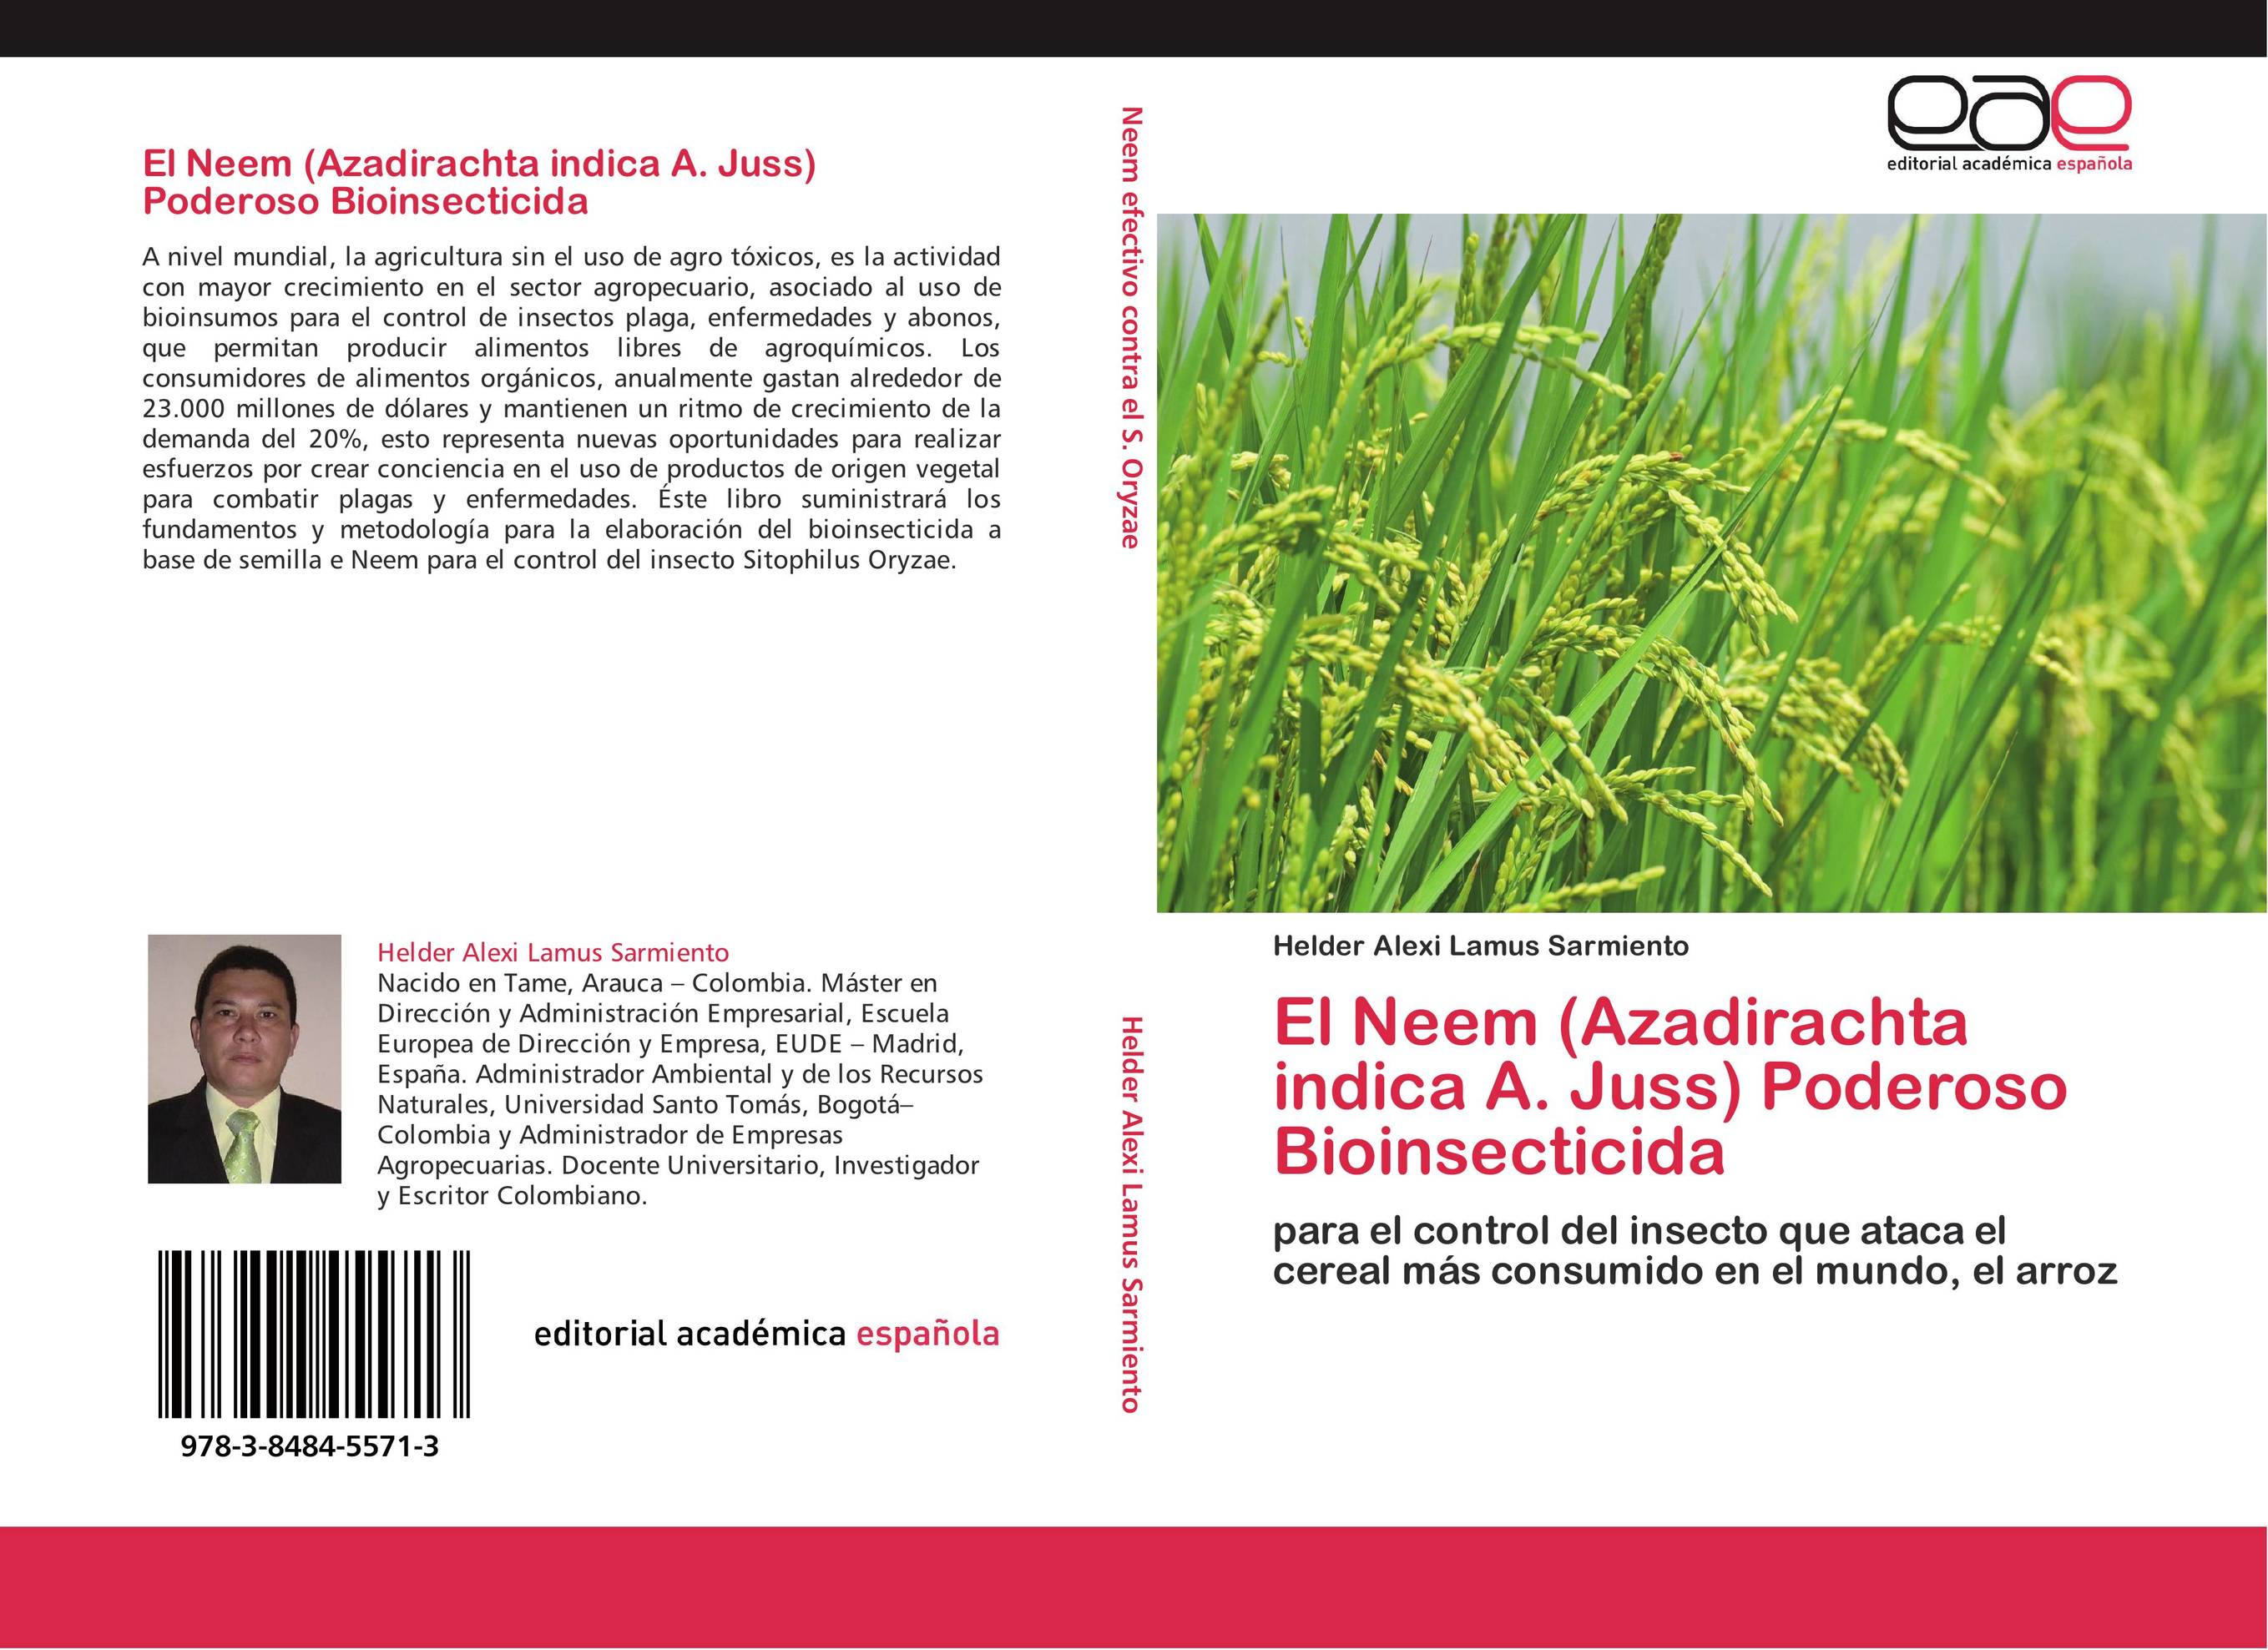 El Neem (Azadirachta indica A. Juss) Poderoso Bioinsecticida